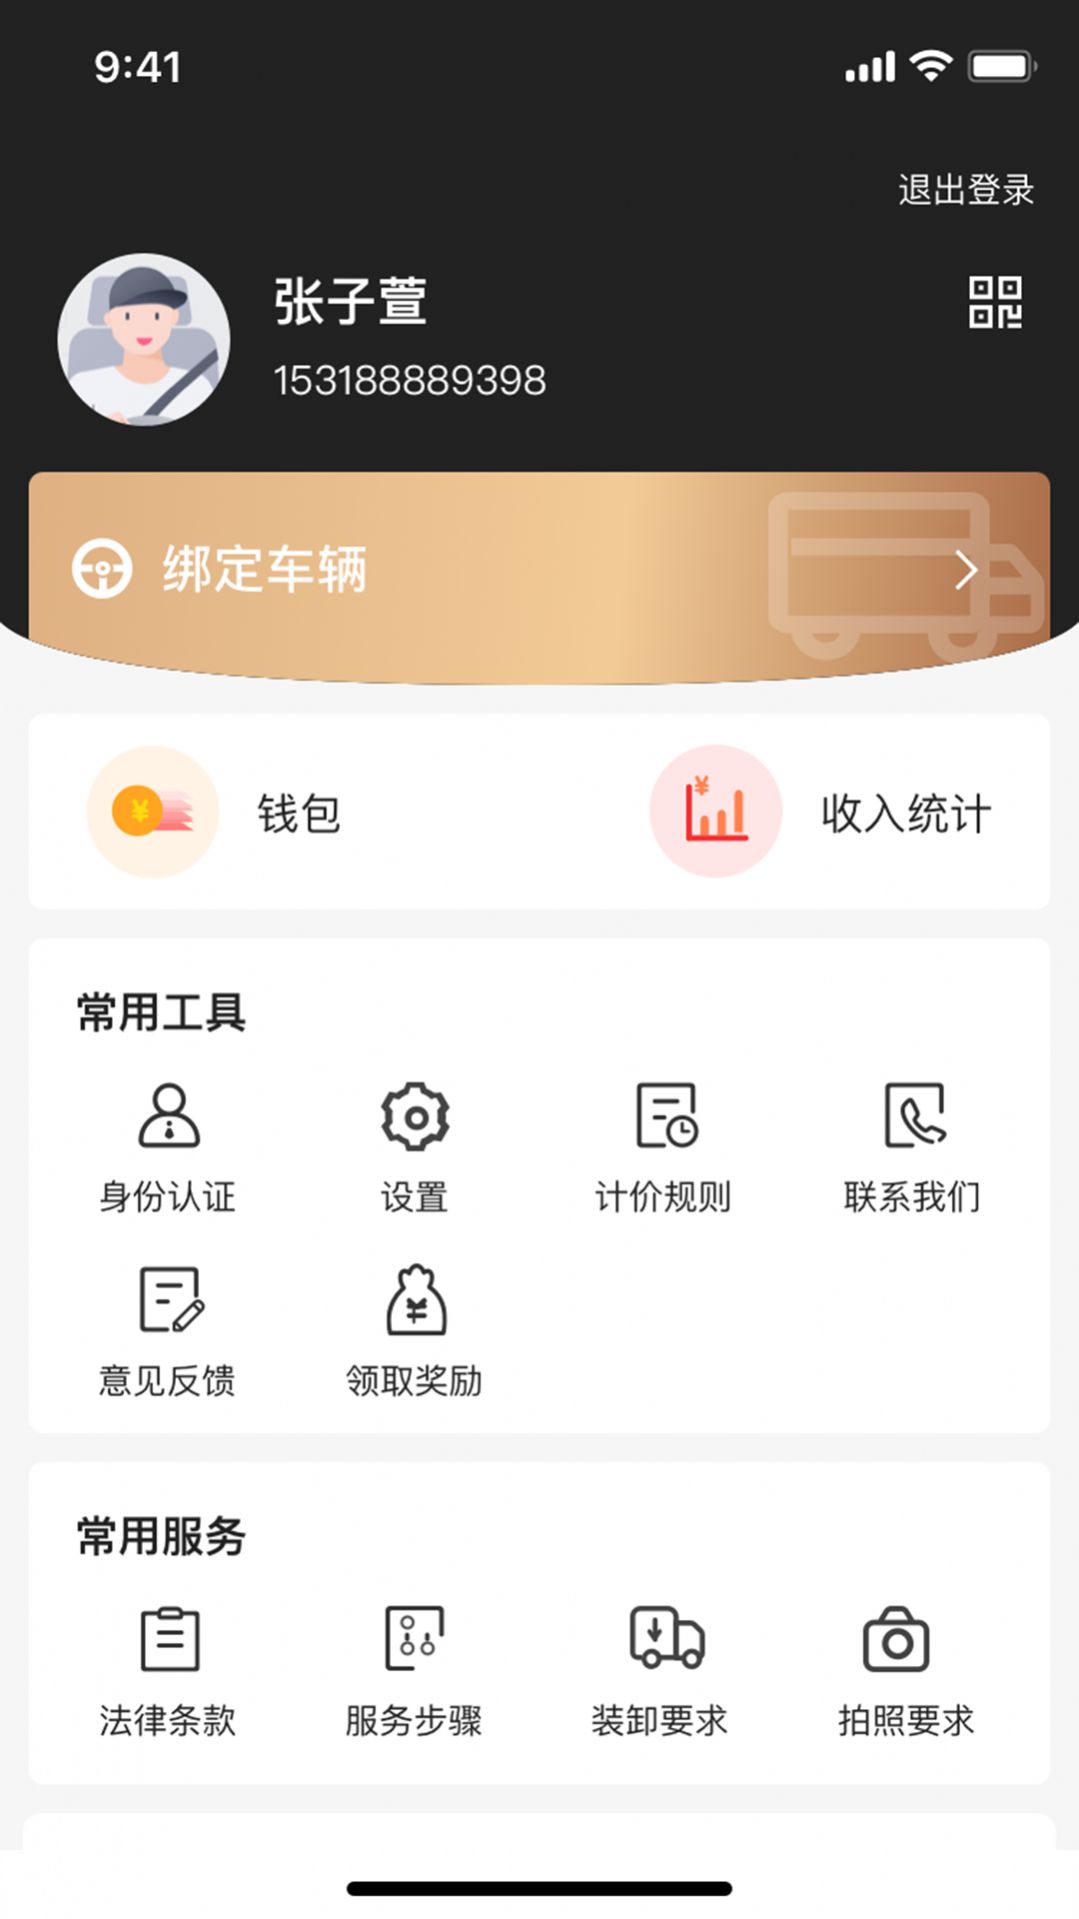 什马速运司机端app安卓版截图2: